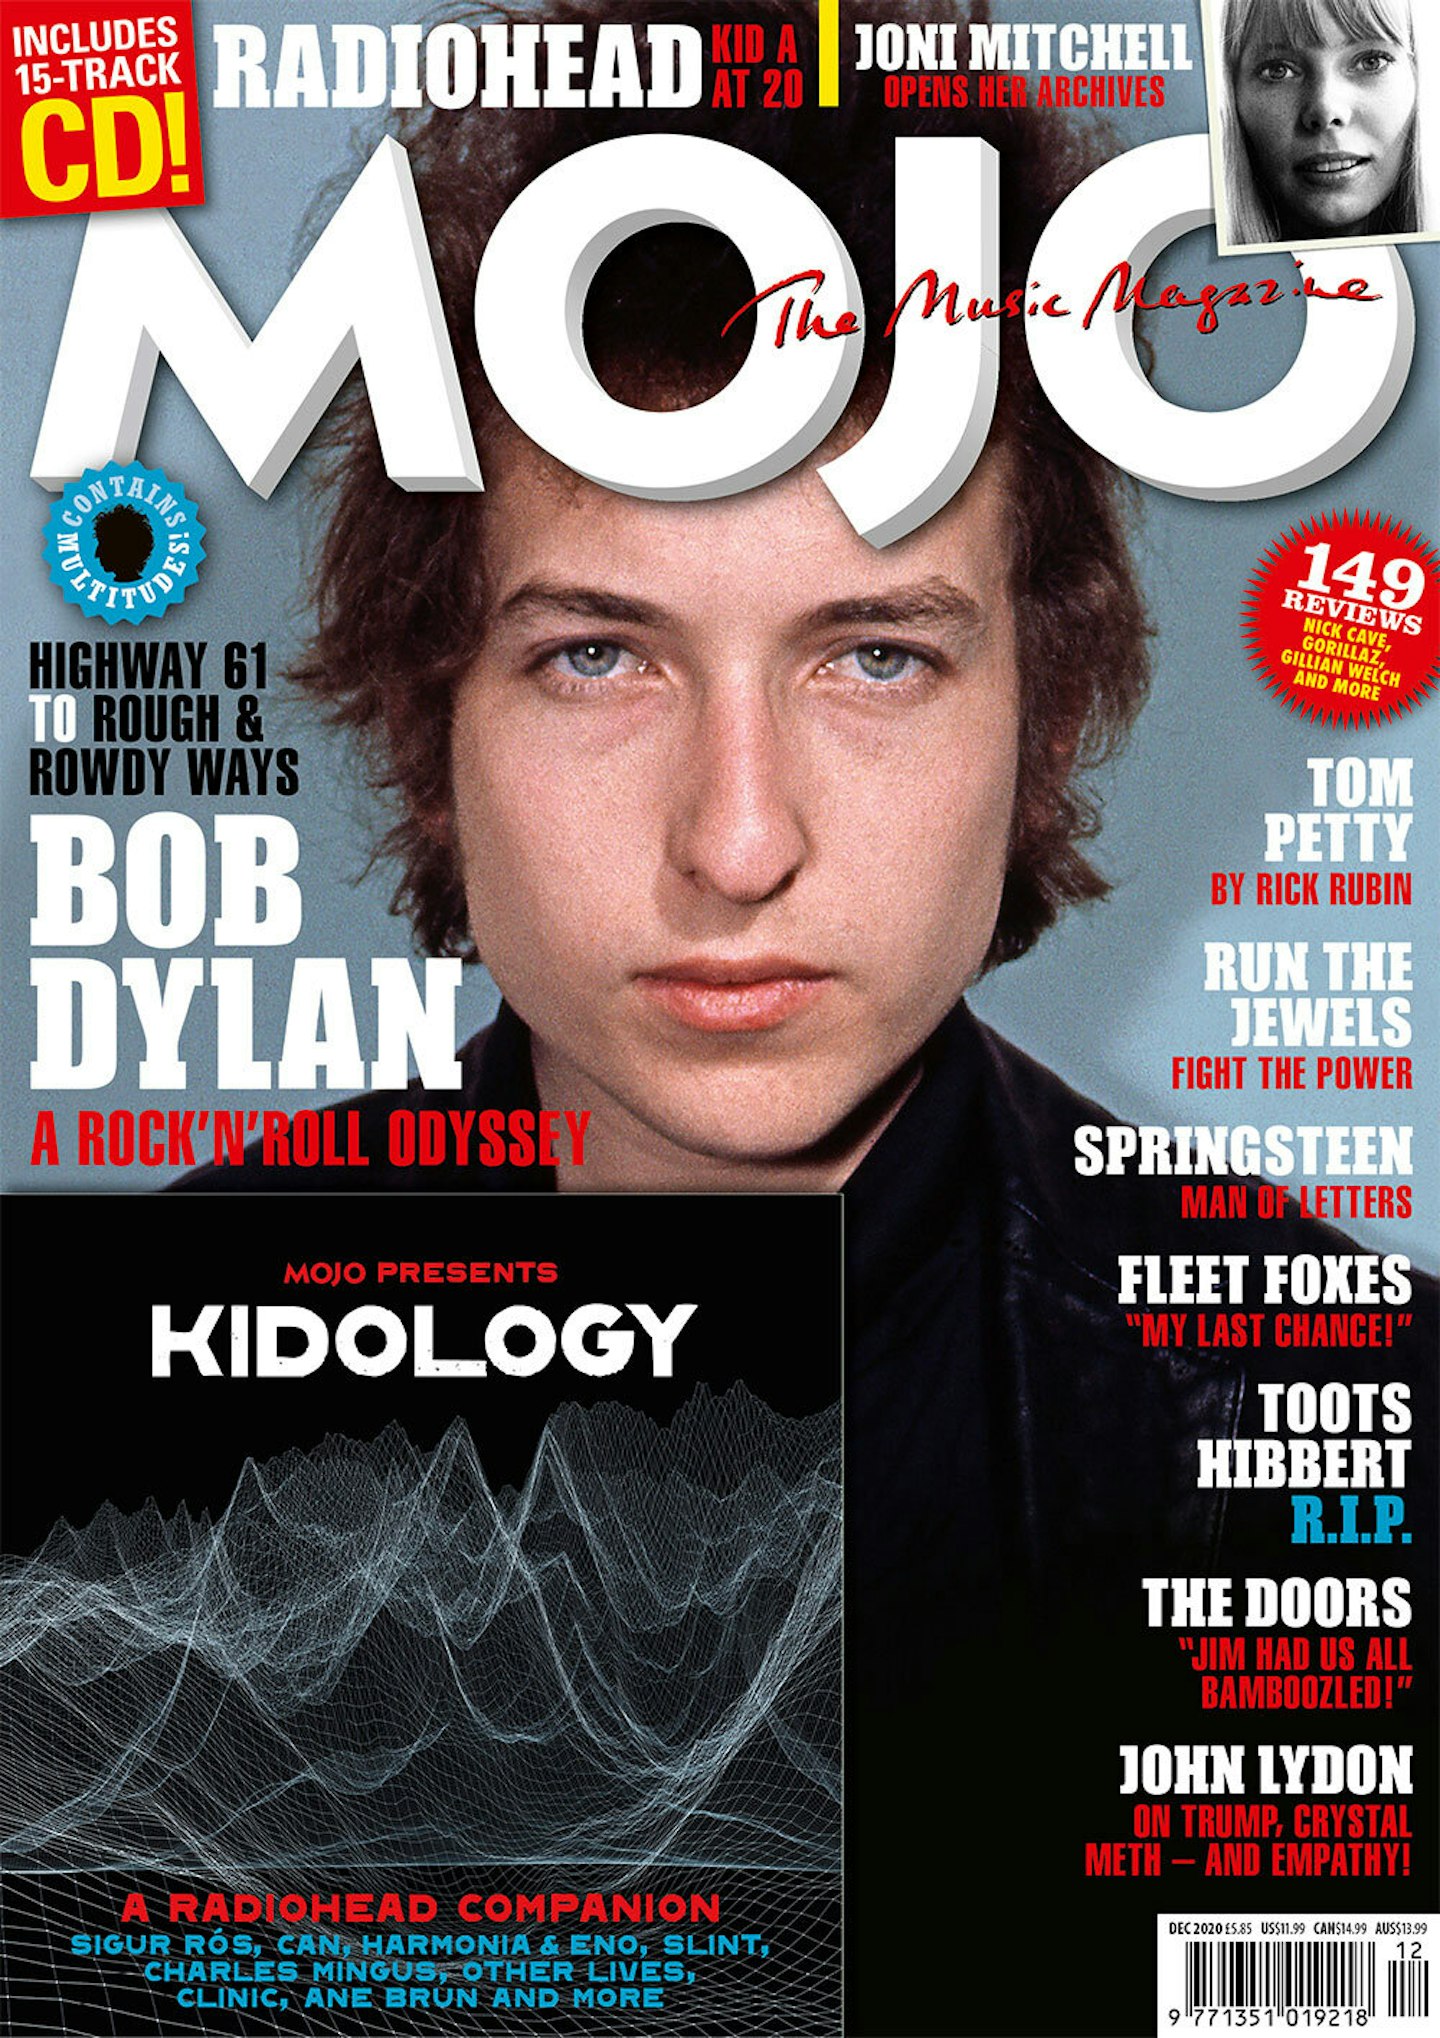 MOJO 325 – December 2020: Bob Dylan